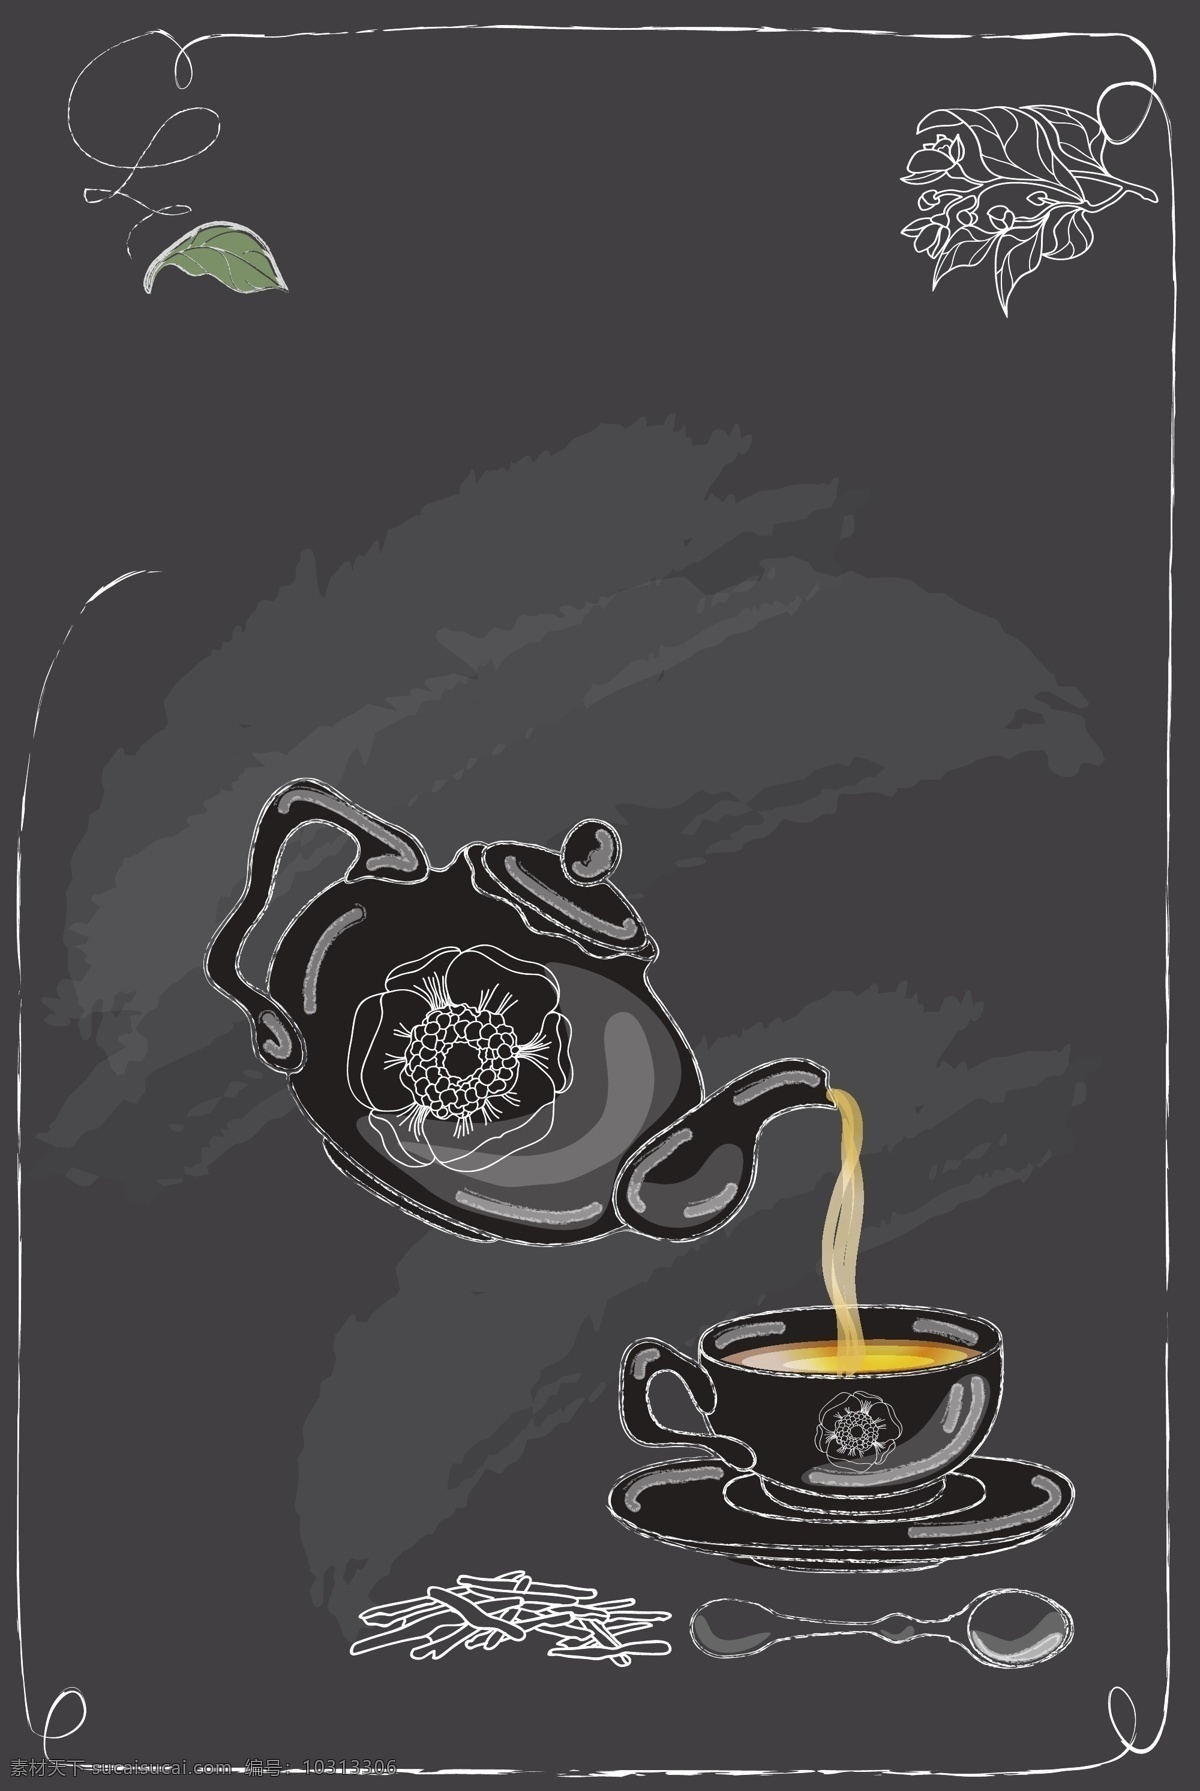 矢量 欧式 下午 茶 手绘 背景 欧式花纹 涂鸦 扁平化 茶叶 下午茶 红茶 绿茶 茶饮 餐点 欧式茶壶 欧式茶杯